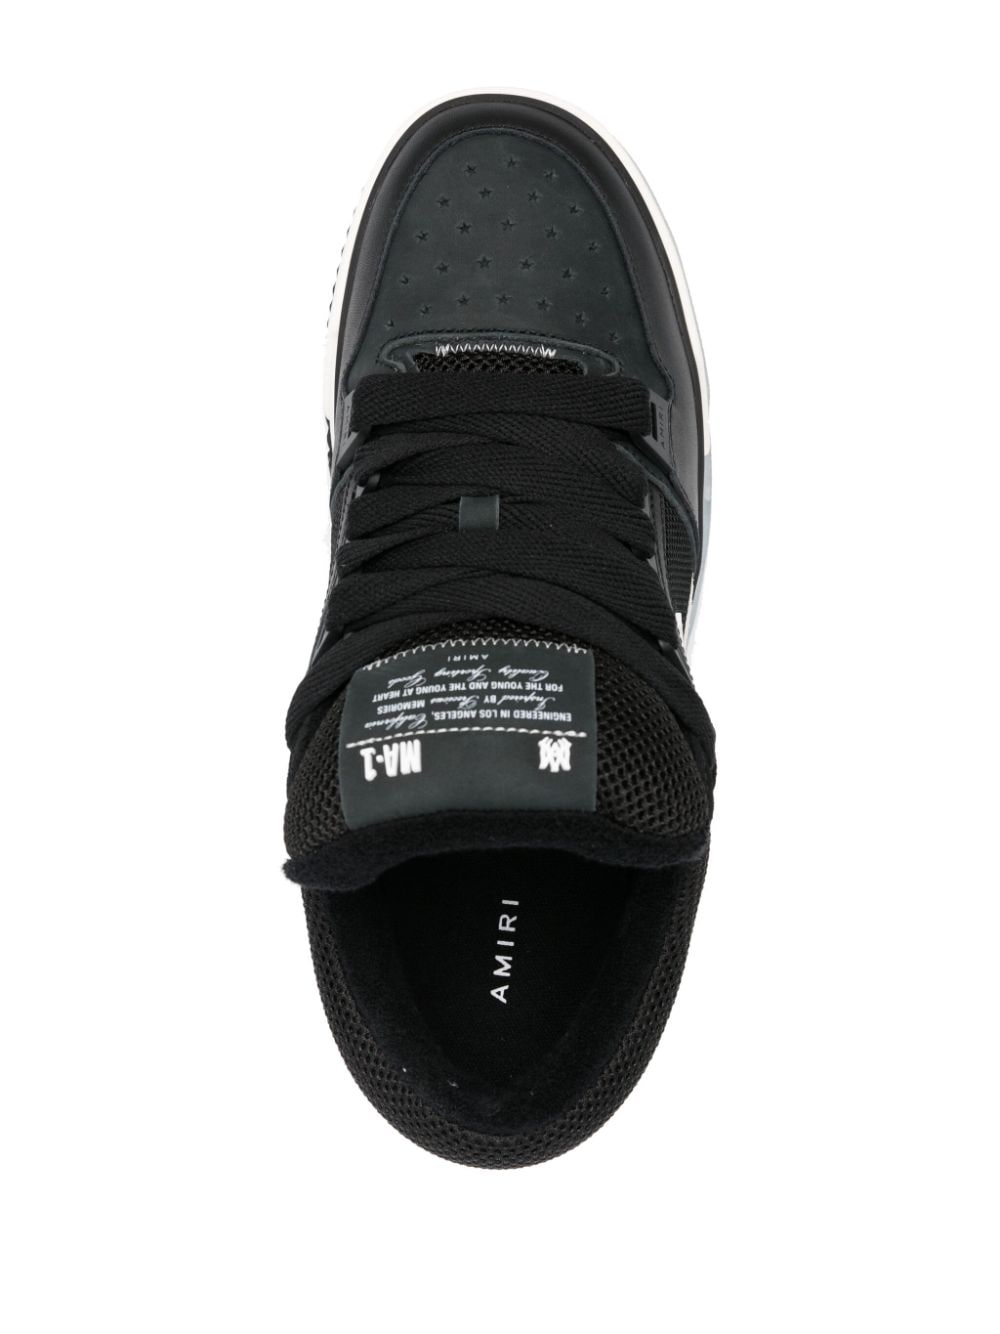 Amiri MA-1 Sneakers Black